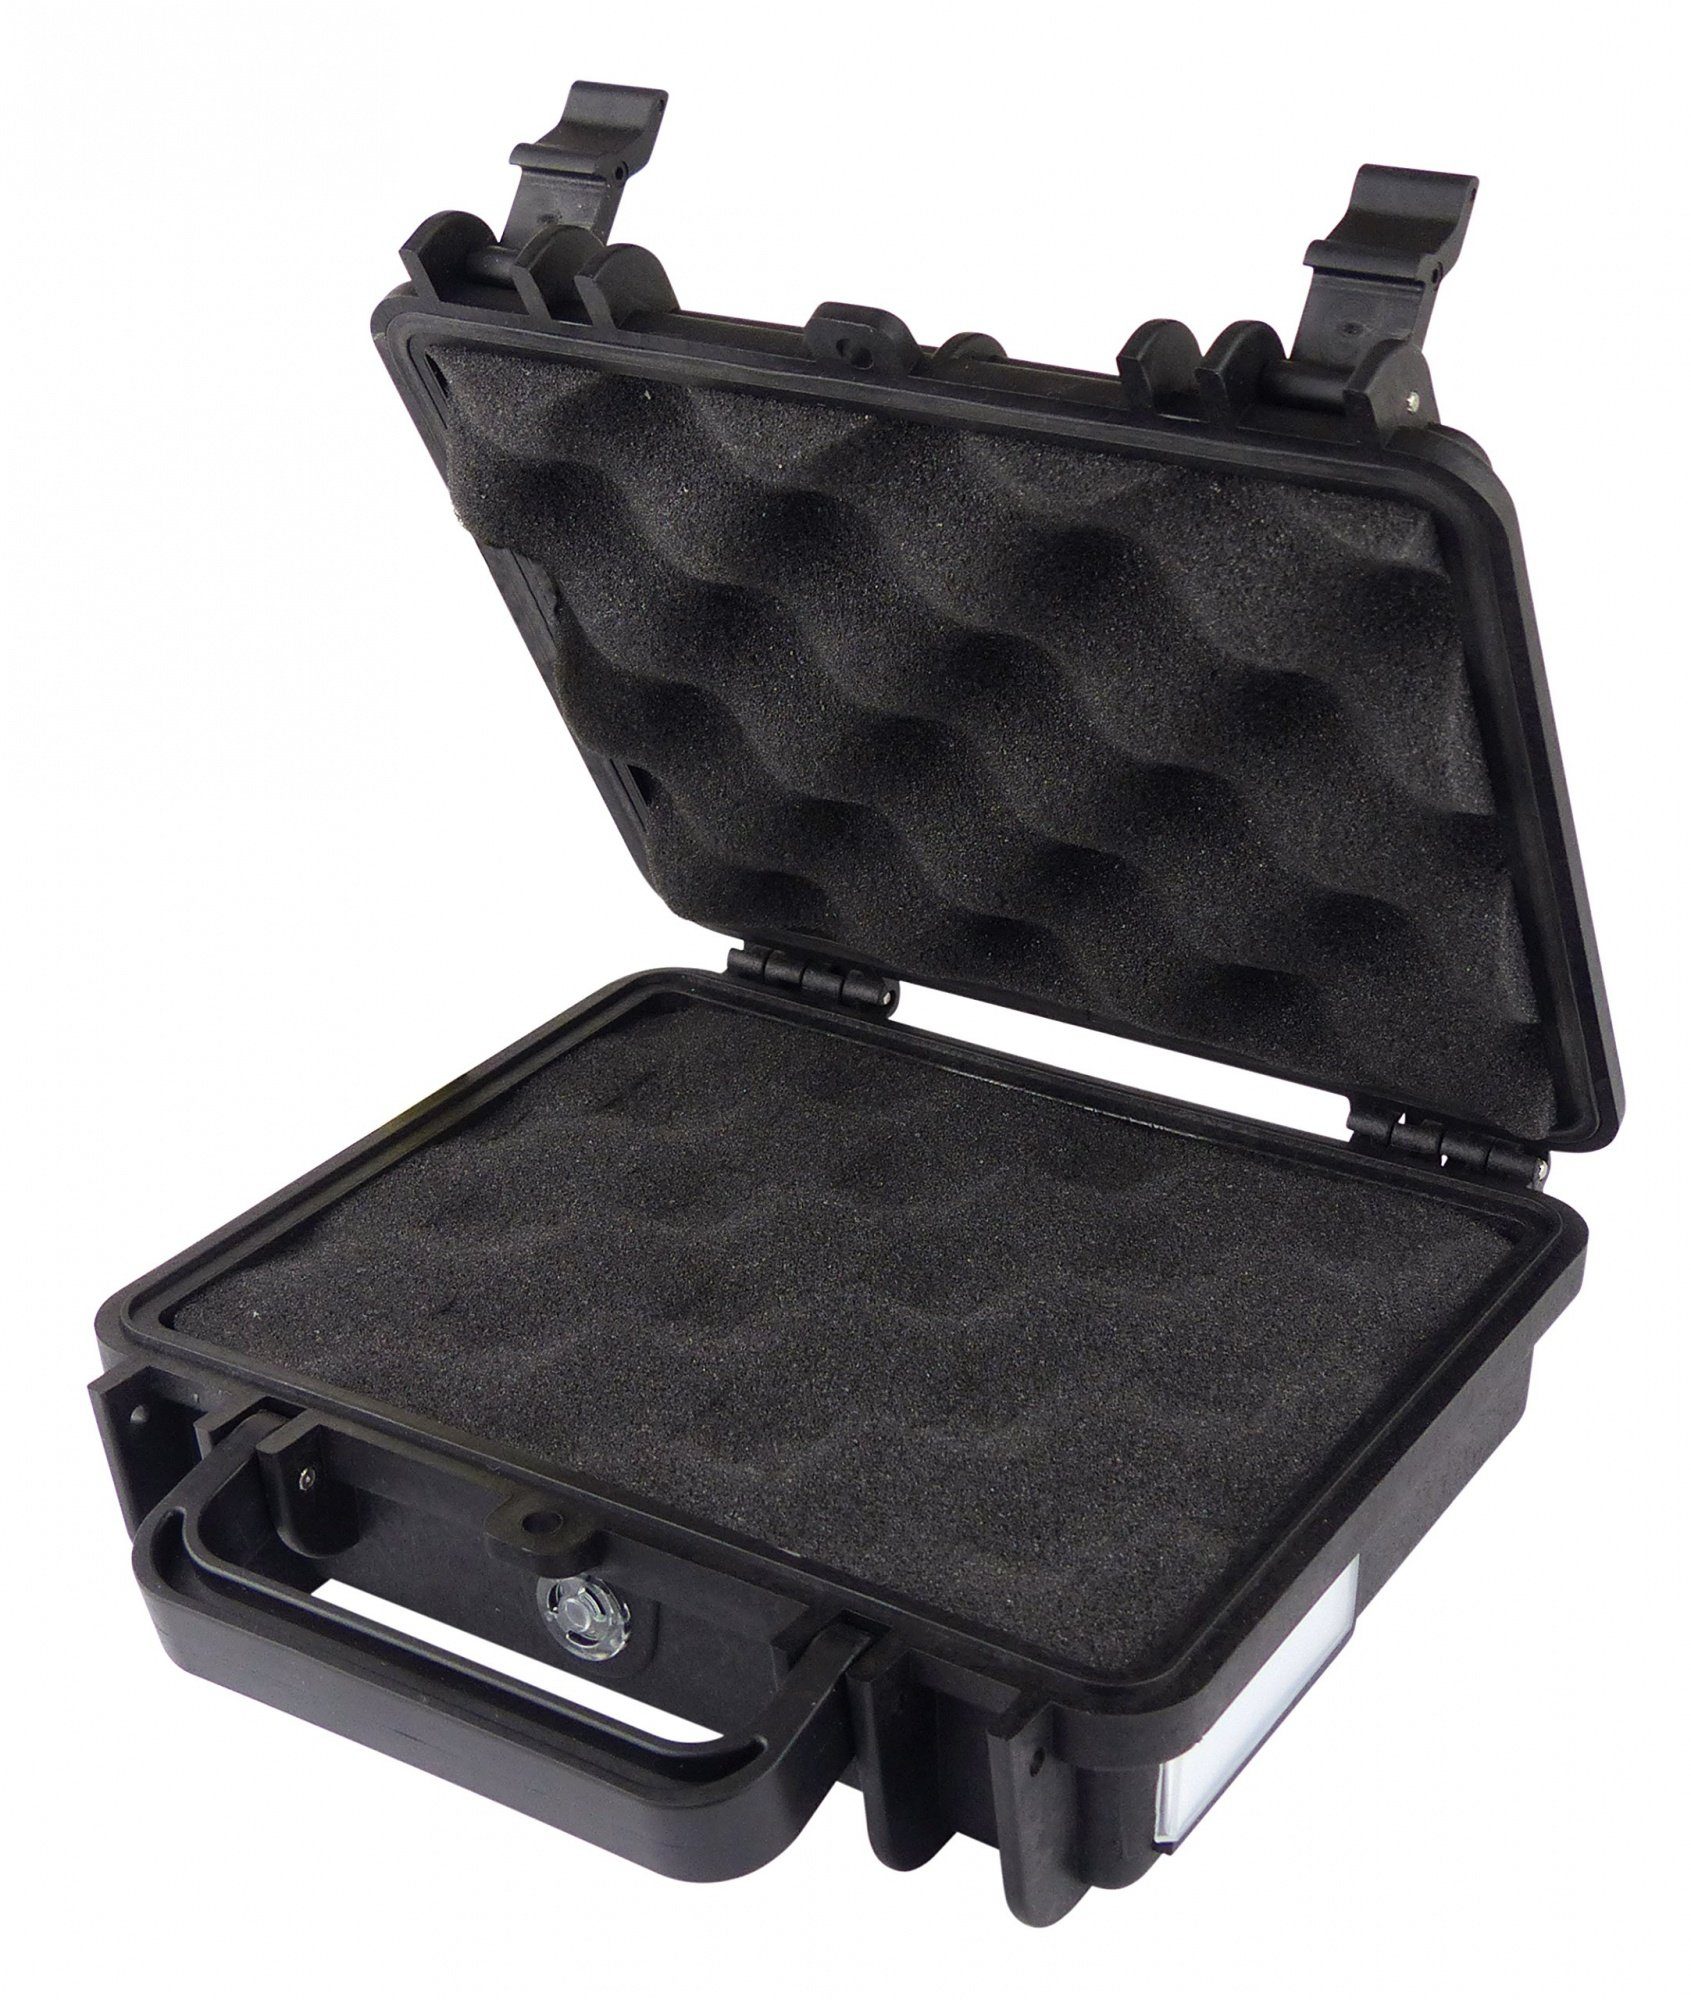 Koffer Blanko voelkner selection Gerätekoffer-Box Staub-/Wasserdicht schlagfest und Test